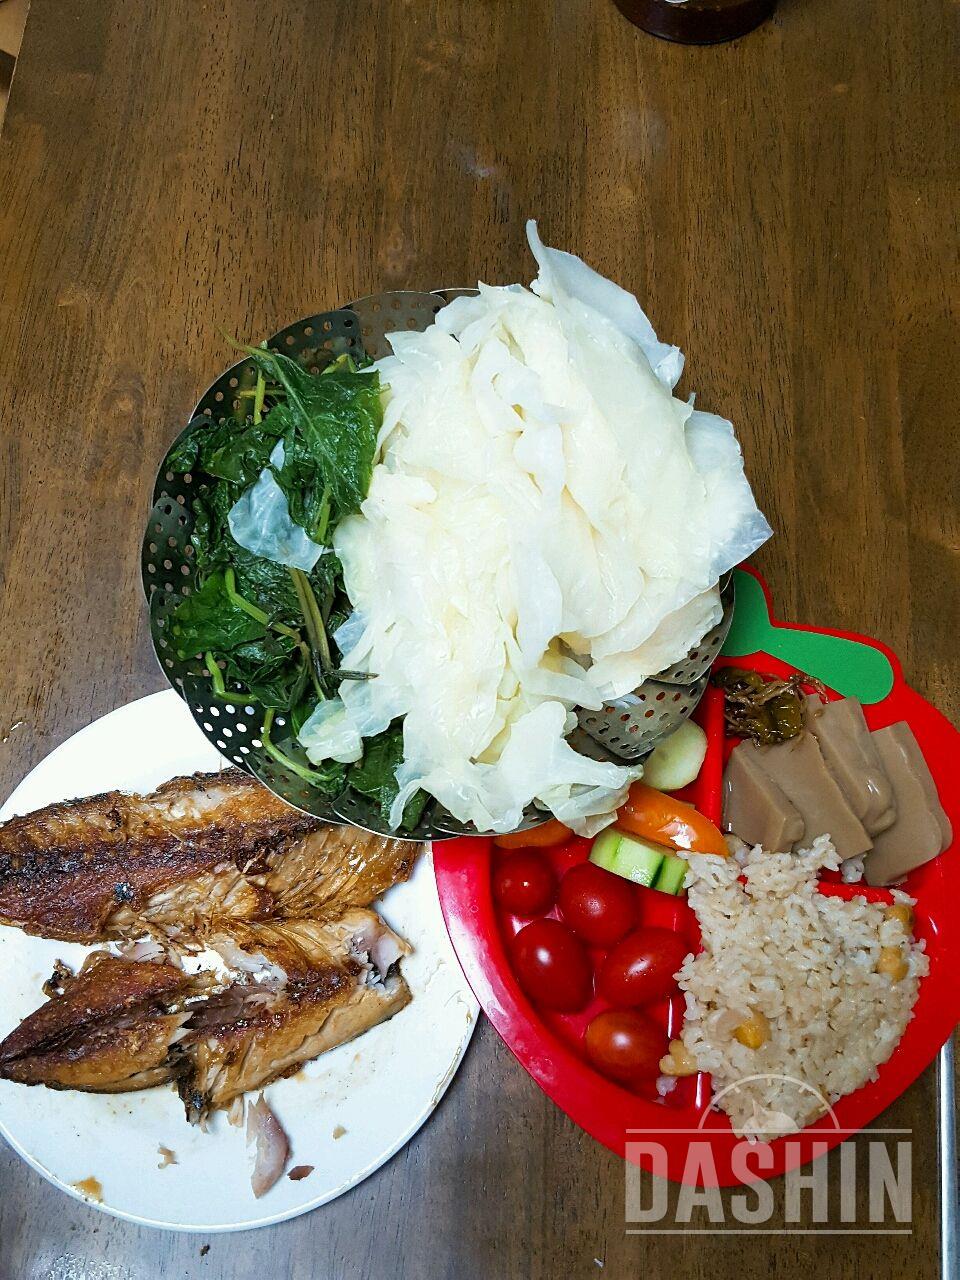 저번주에 점심부터 현미밥일반식으로했습니다